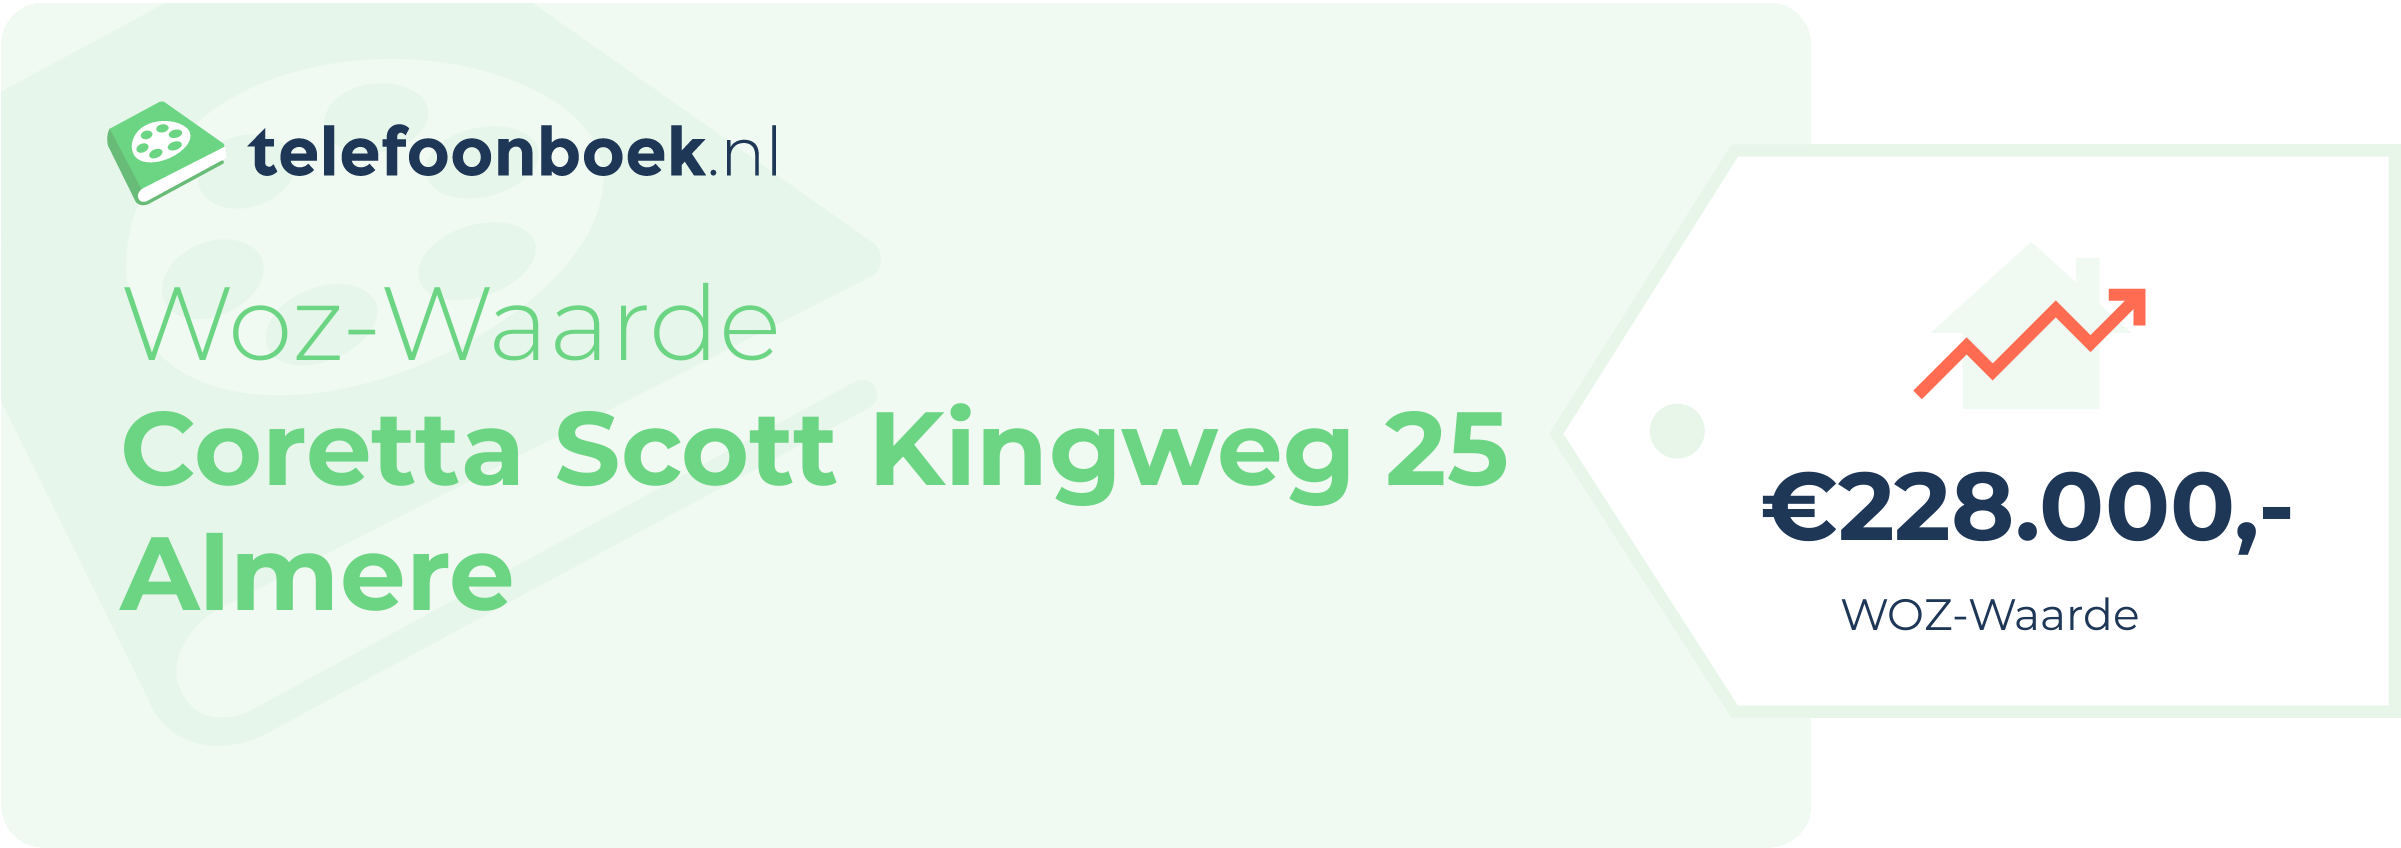 WOZ-waarde Coretta Scott Kingweg 25 Almere